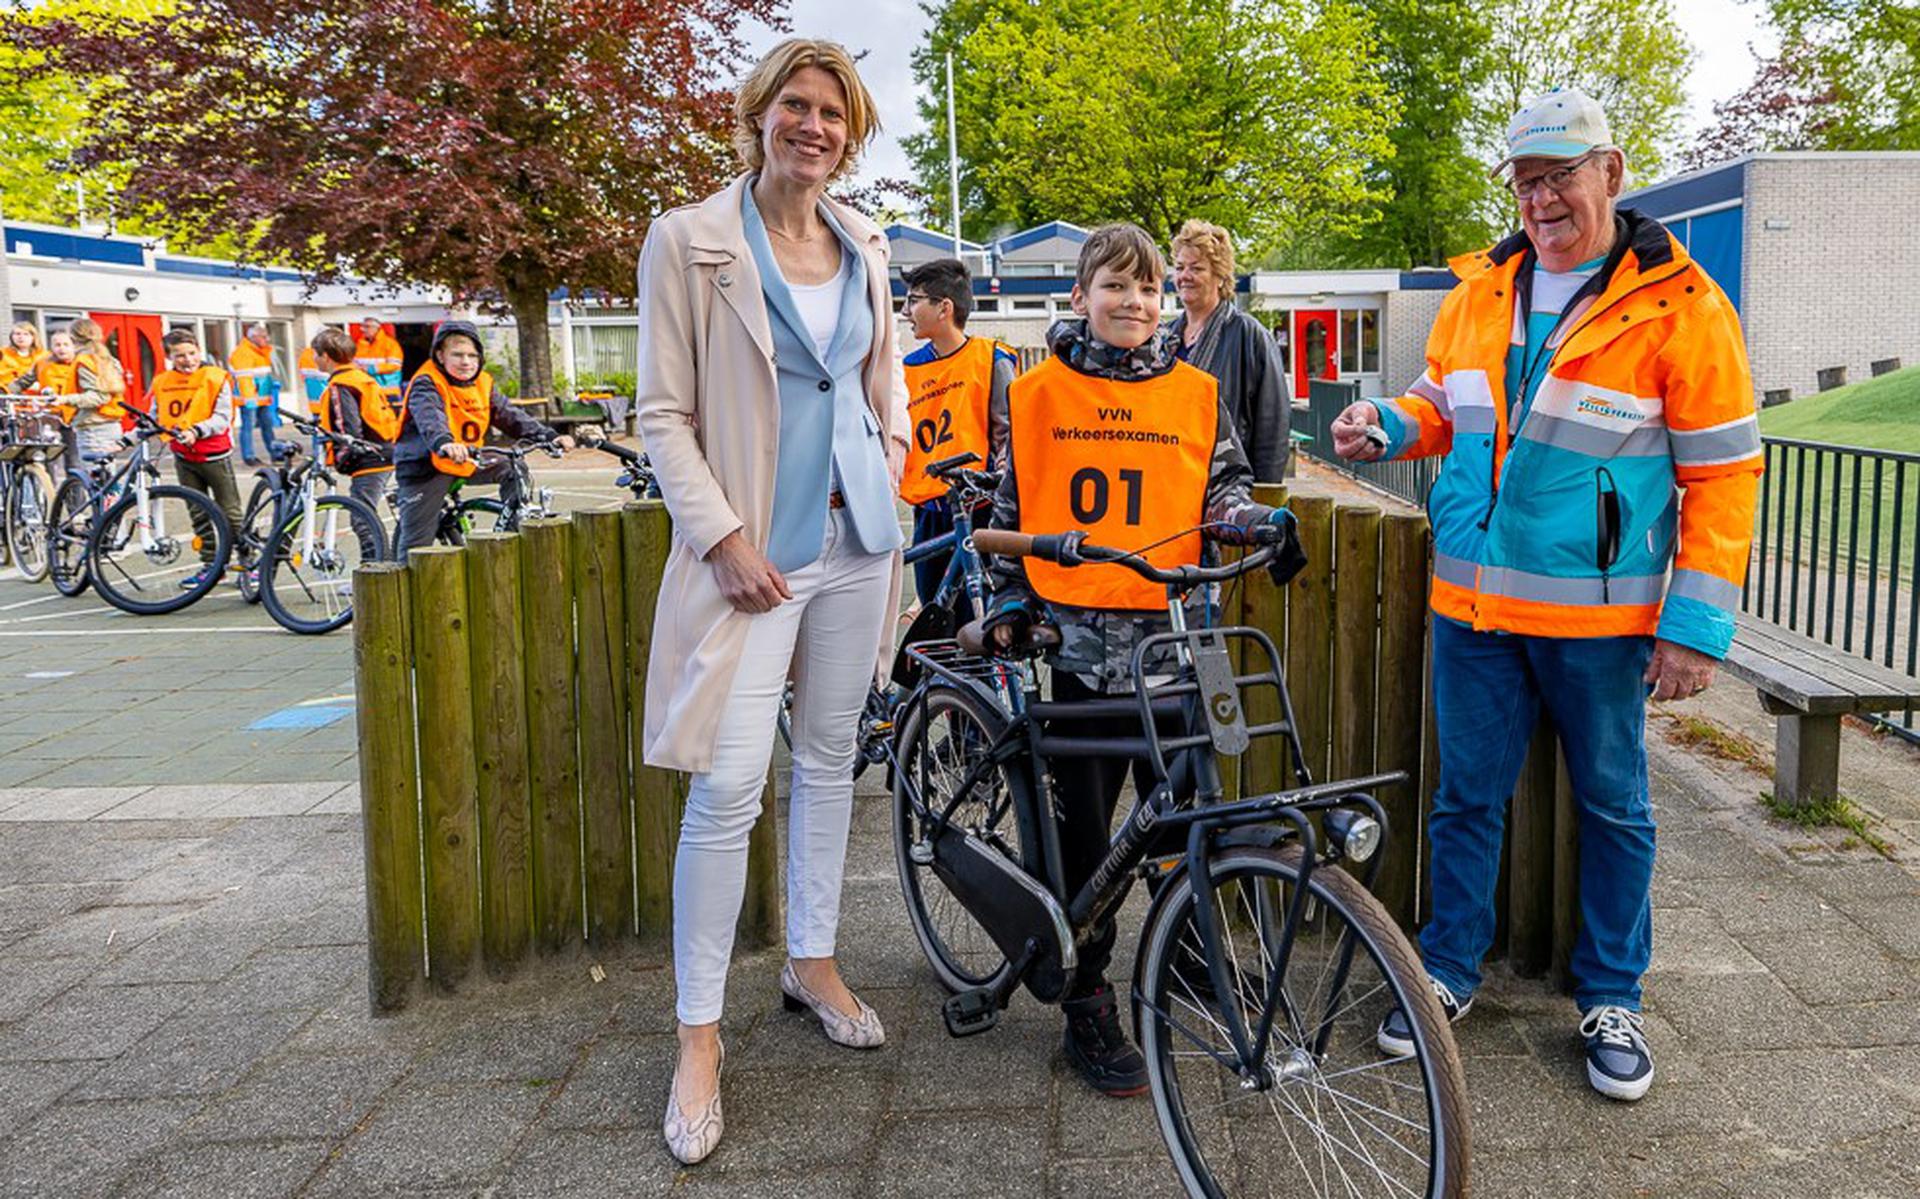 Wethouder De Pee, deelnemer Brent en een vrijwilliger van Veilig Verkeer Nederland bij de start van het examen.